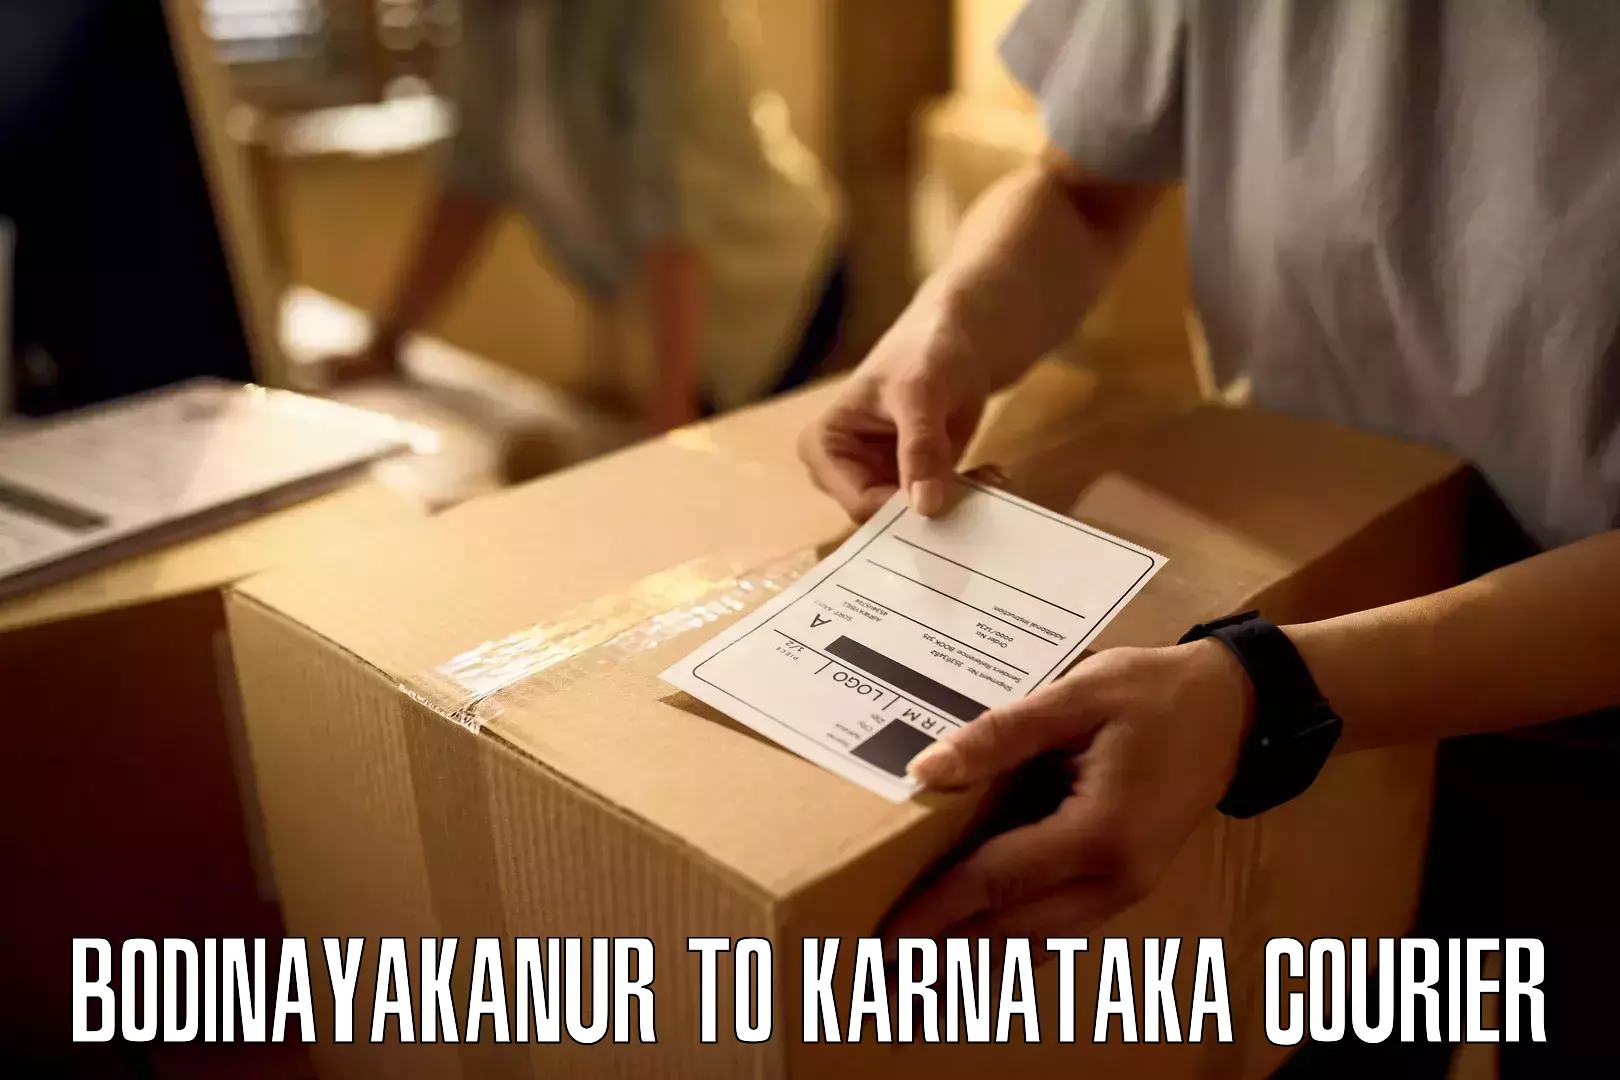 Comprehensive logistics Bodinayakanur to Manvi